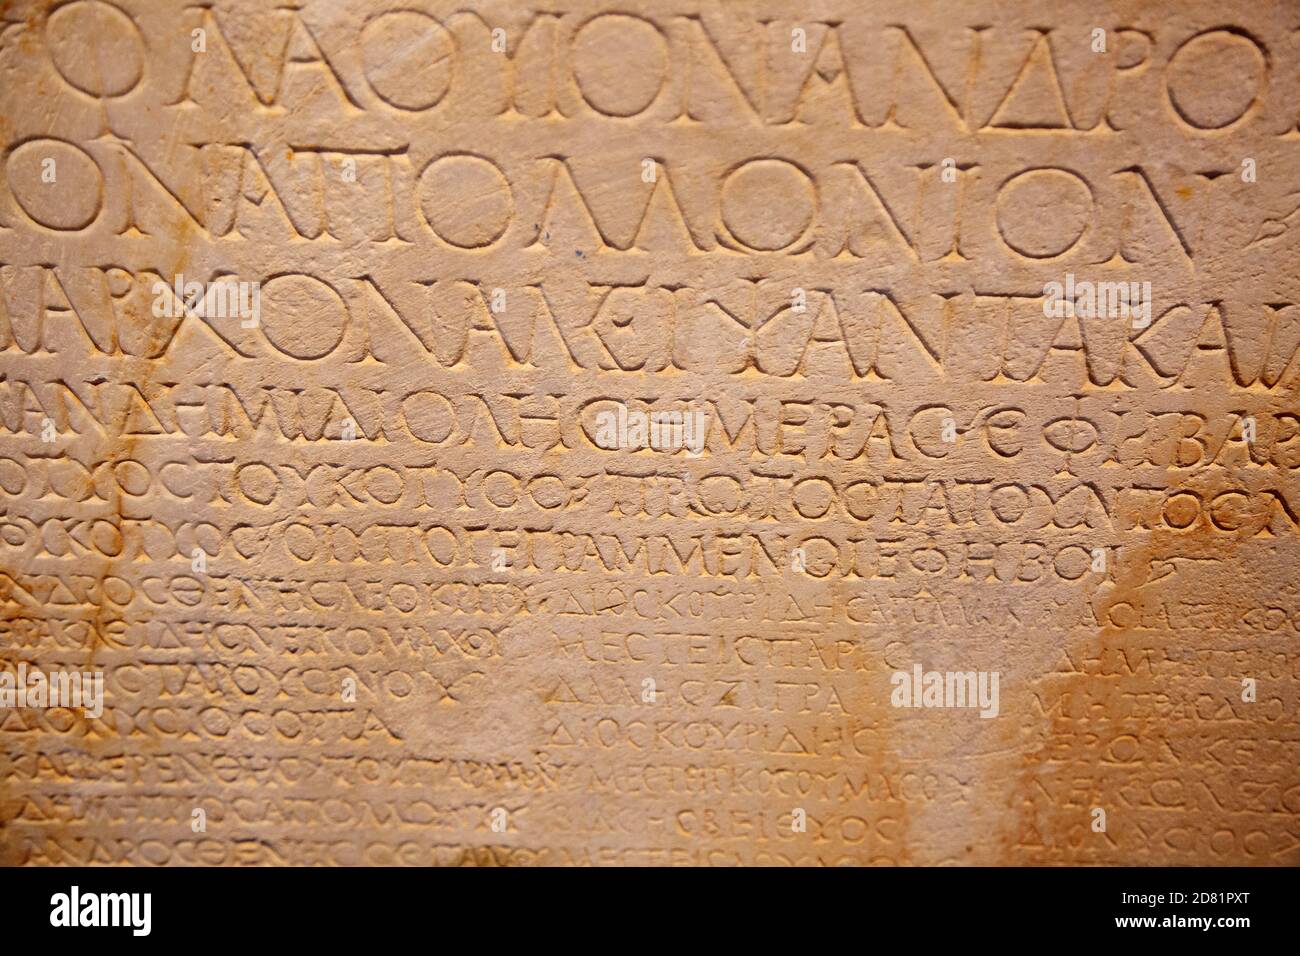 Fragmento de las antiguas letras griegas talladas en la piedra Foto de stock